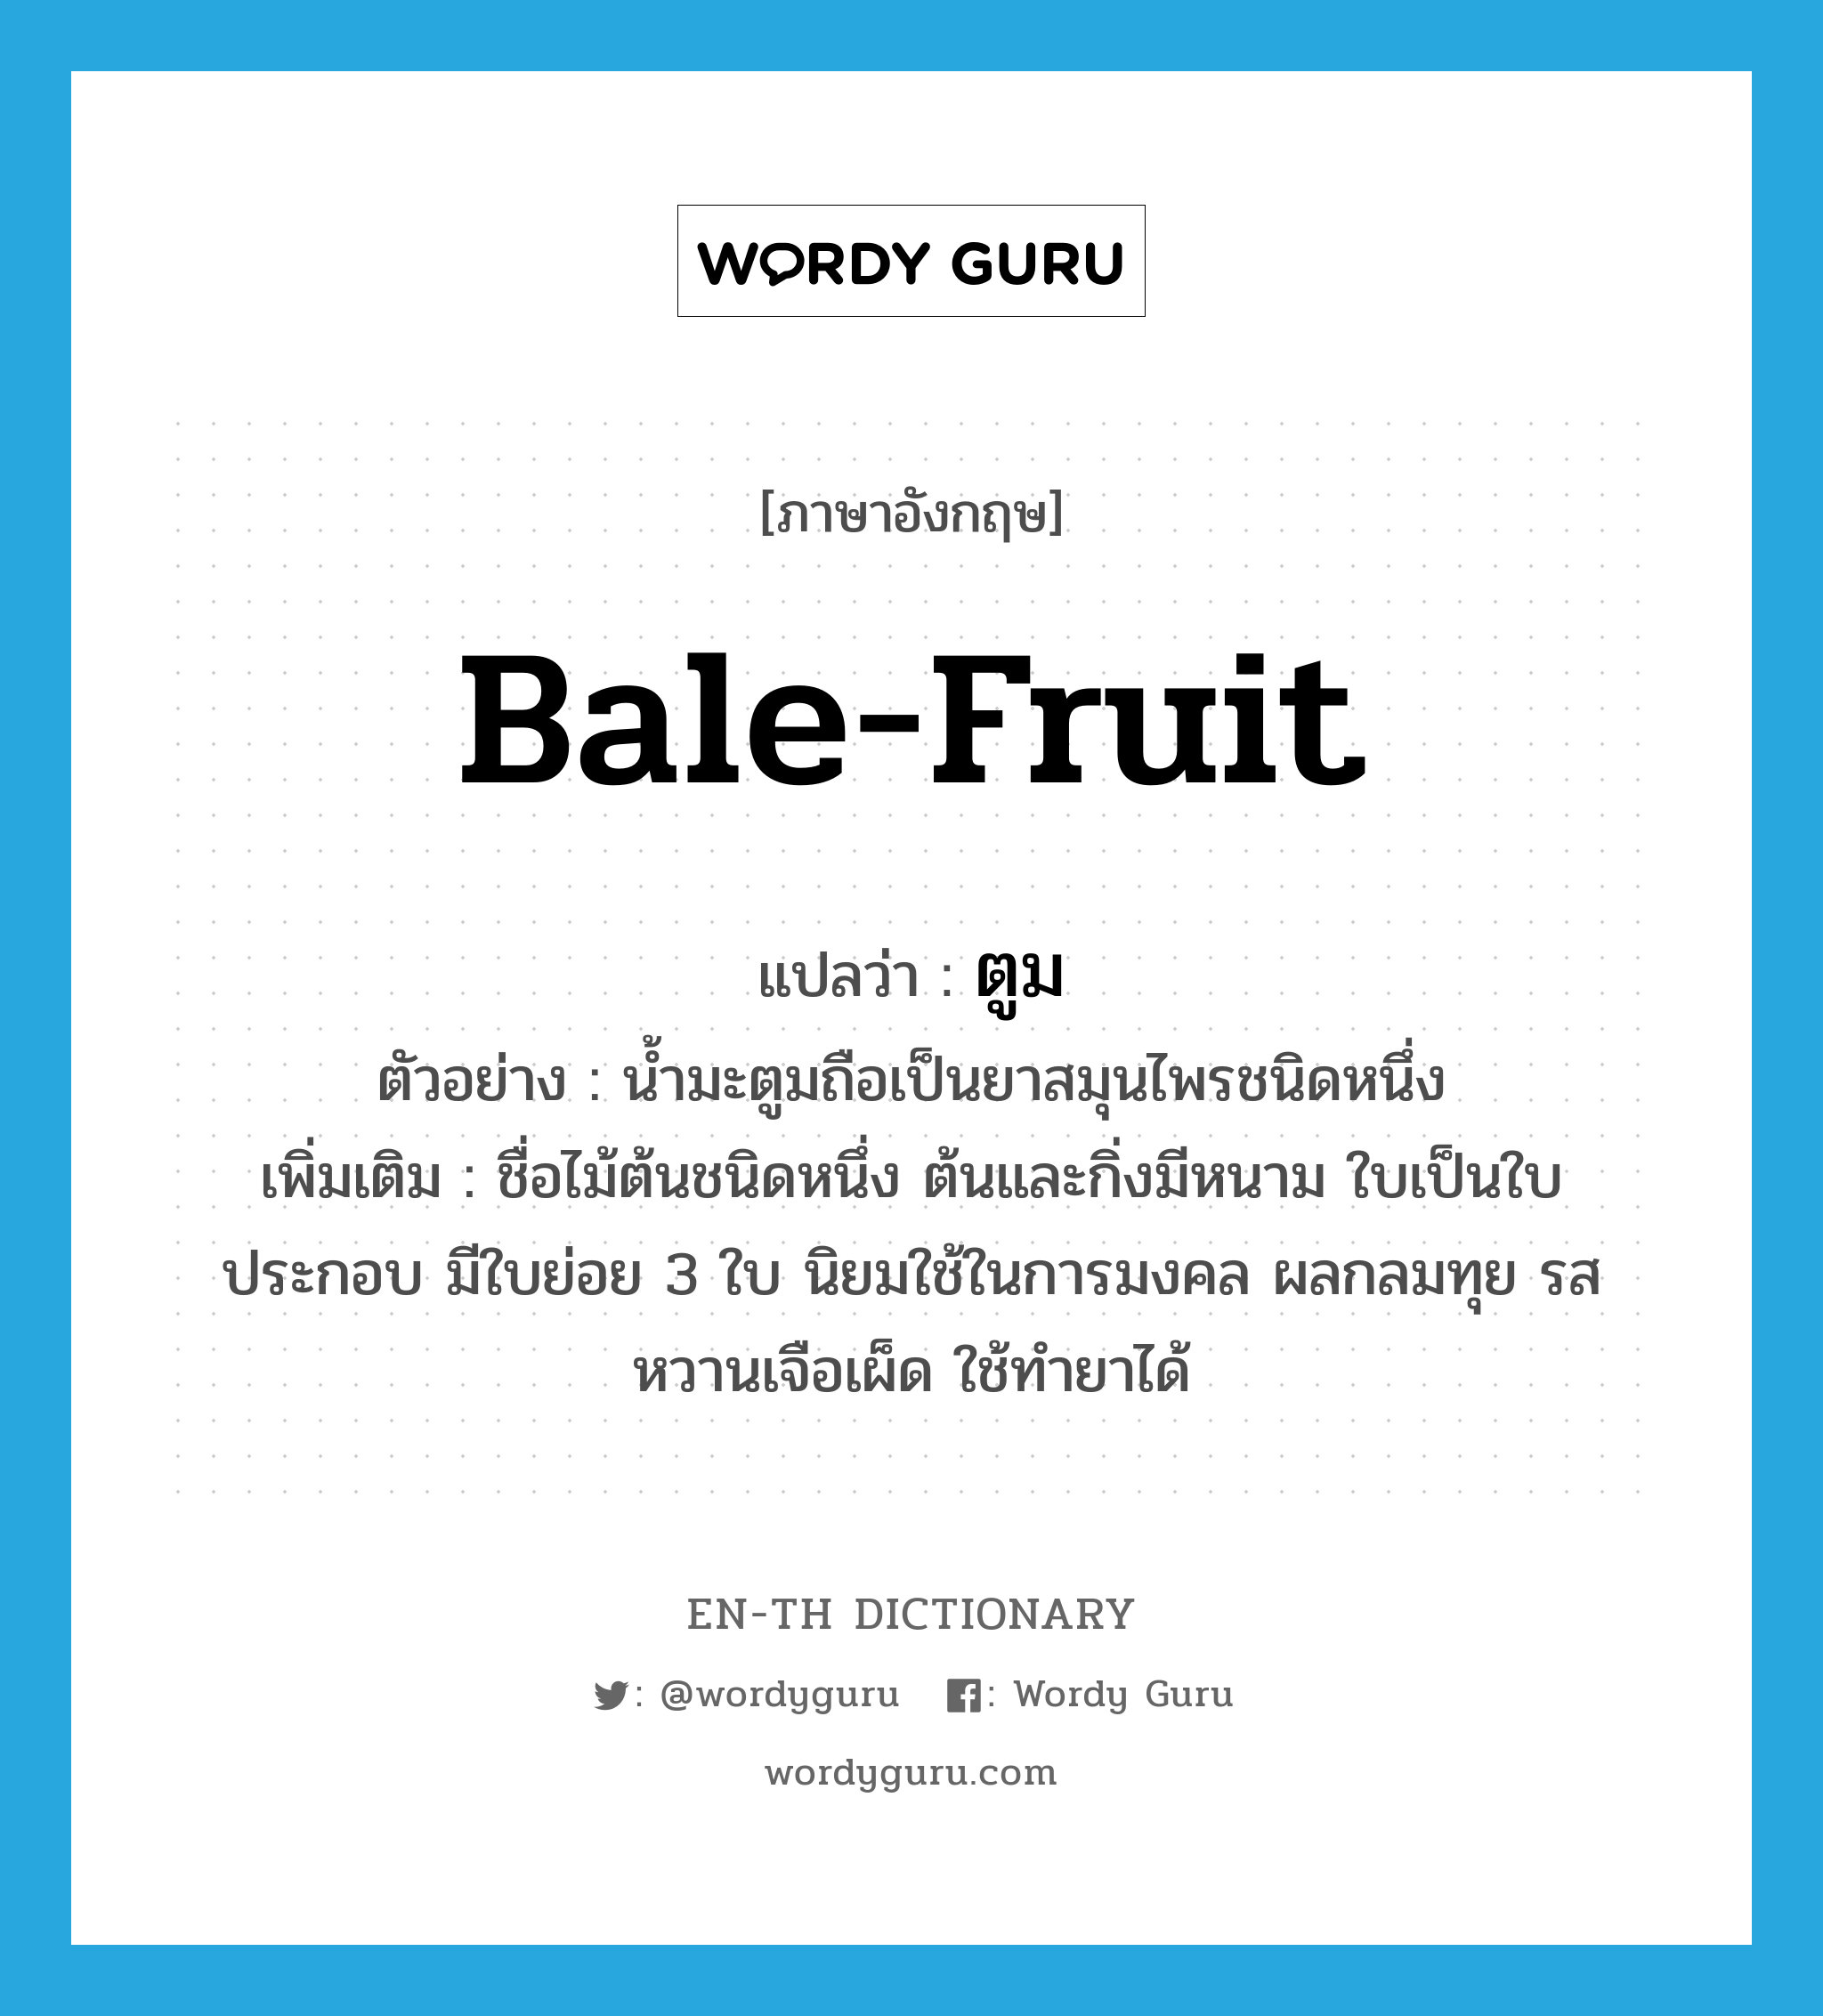 ตูม ภาษาอังกฤษ?, คำศัพท์ภาษาอังกฤษ ตูม แปลว่า bale-fruit ประเภท N ตัวอย่าง น้ำมะตูมถือเป็นยาสมุนไพรชนิดหนึ่ง เพิ่มเติม ชื่อไม้ต้นชนิดหนึ่ง ต้นและกิ่งมีหนาม ใบเป็นใบประกอบ มีใบย่อย 3 ใบ นิยมใช้ในการมงคล ผลกลมทุย รสหวานเจือเผ็ด ใช้ทำยาได้ หมวด N